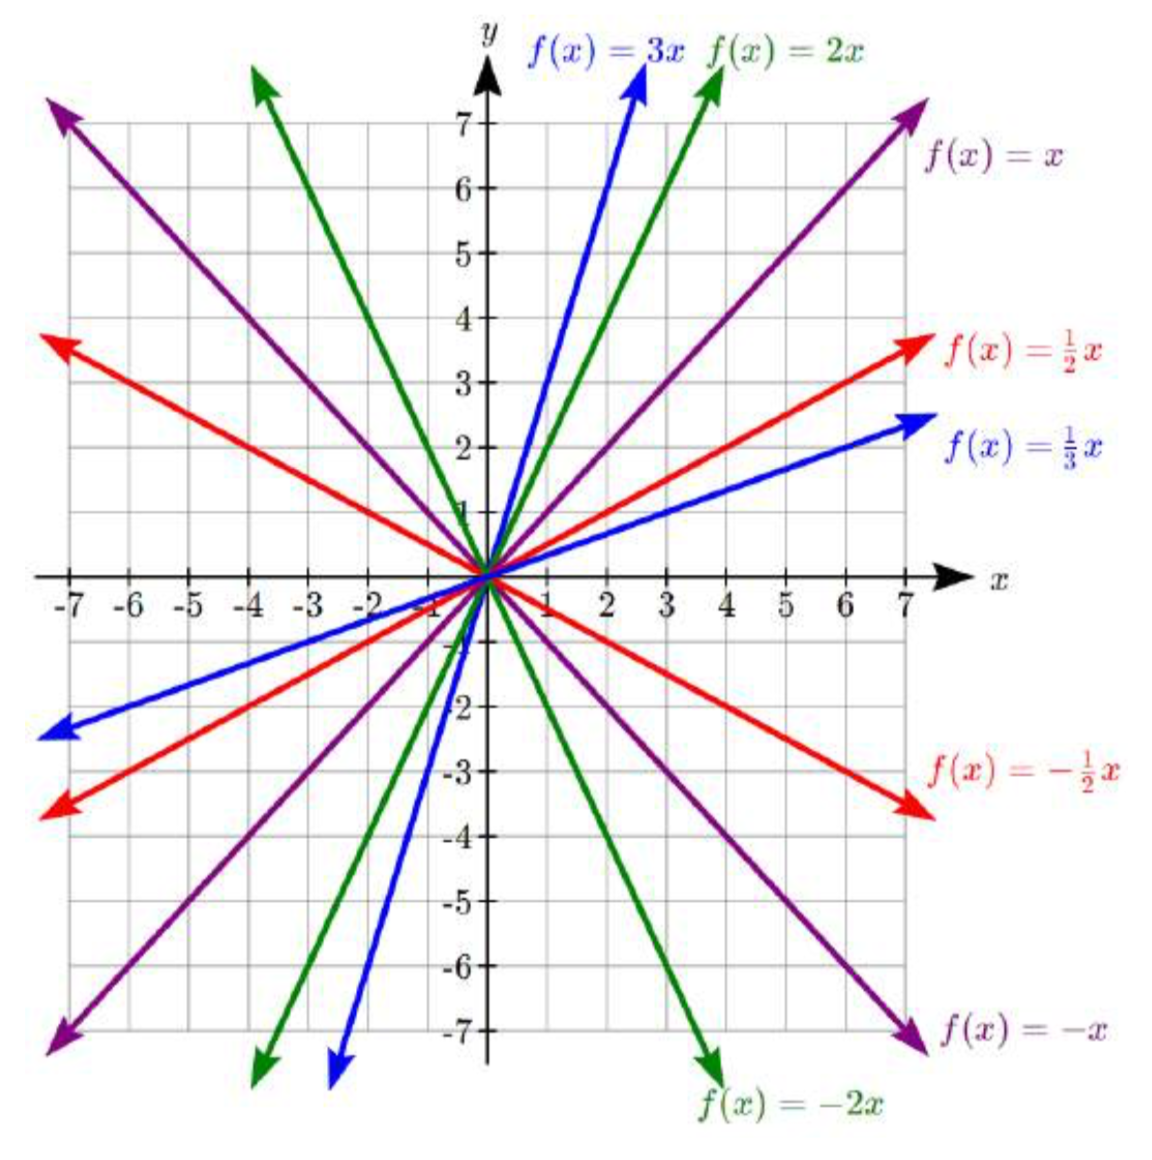 Múltiples líneas etiquetadas en una gráfica, todas pasando por el origen. f (x) =un tercio x, pasando por 3 comas 1. f (x) =media x, pasando por 2 comas 1. f (x) =x, pasando por 1 coma 1. f (x) =2x pasando por 1 coma 2. f (x) =3x pasando por 1 coma 3.